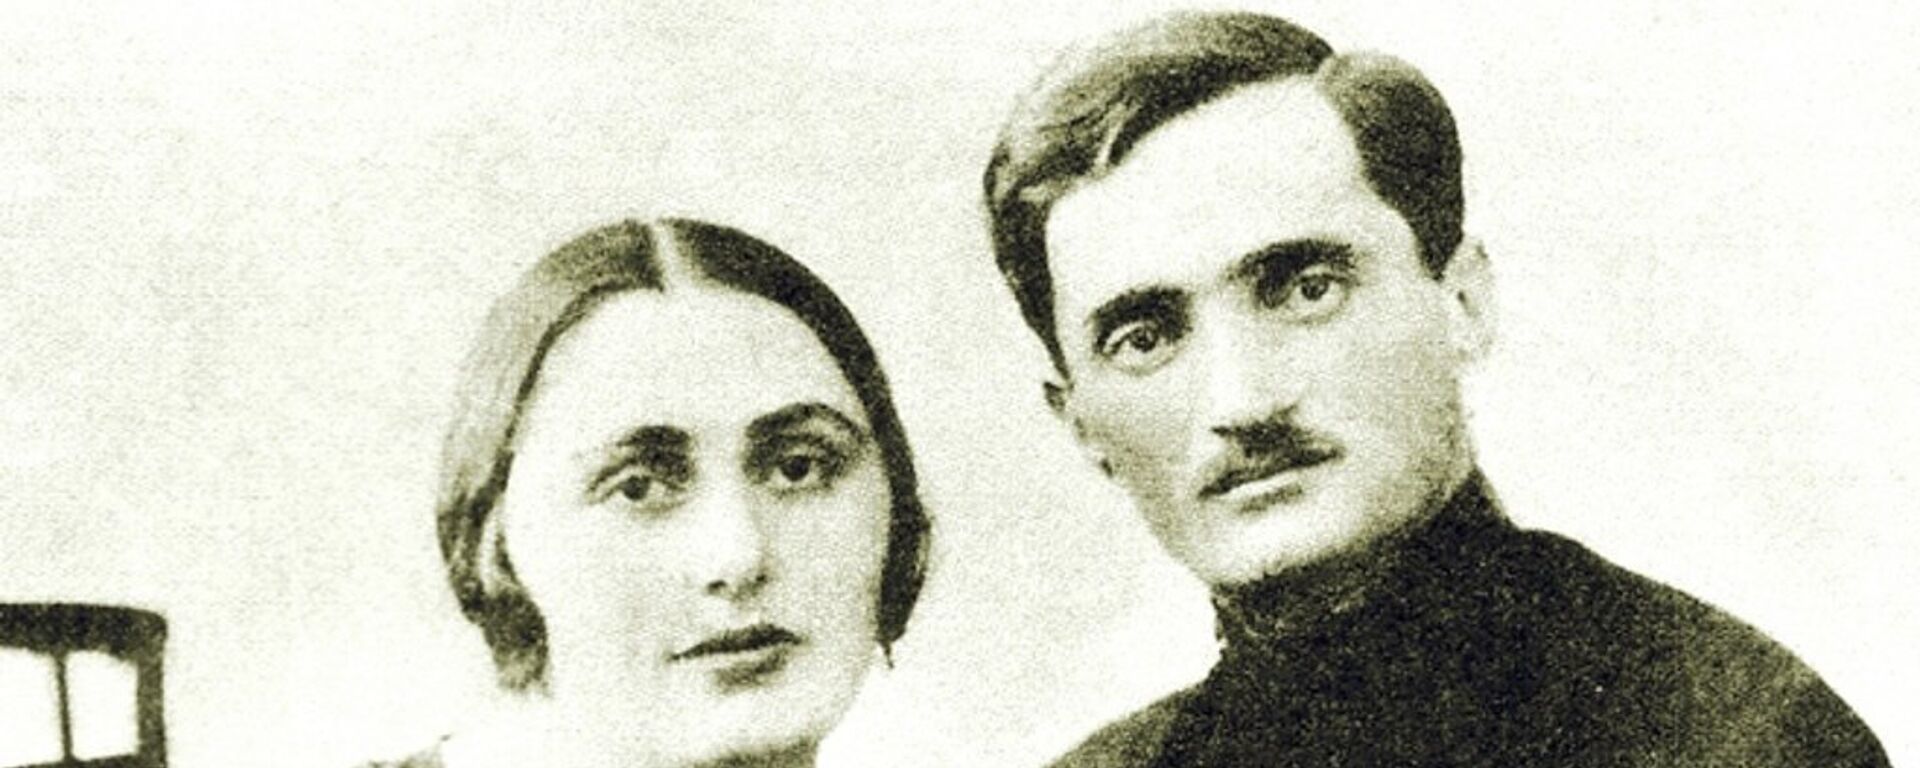 С любимой женой Сарией - Sputnik Абхазия, 1920, 01.05.2020